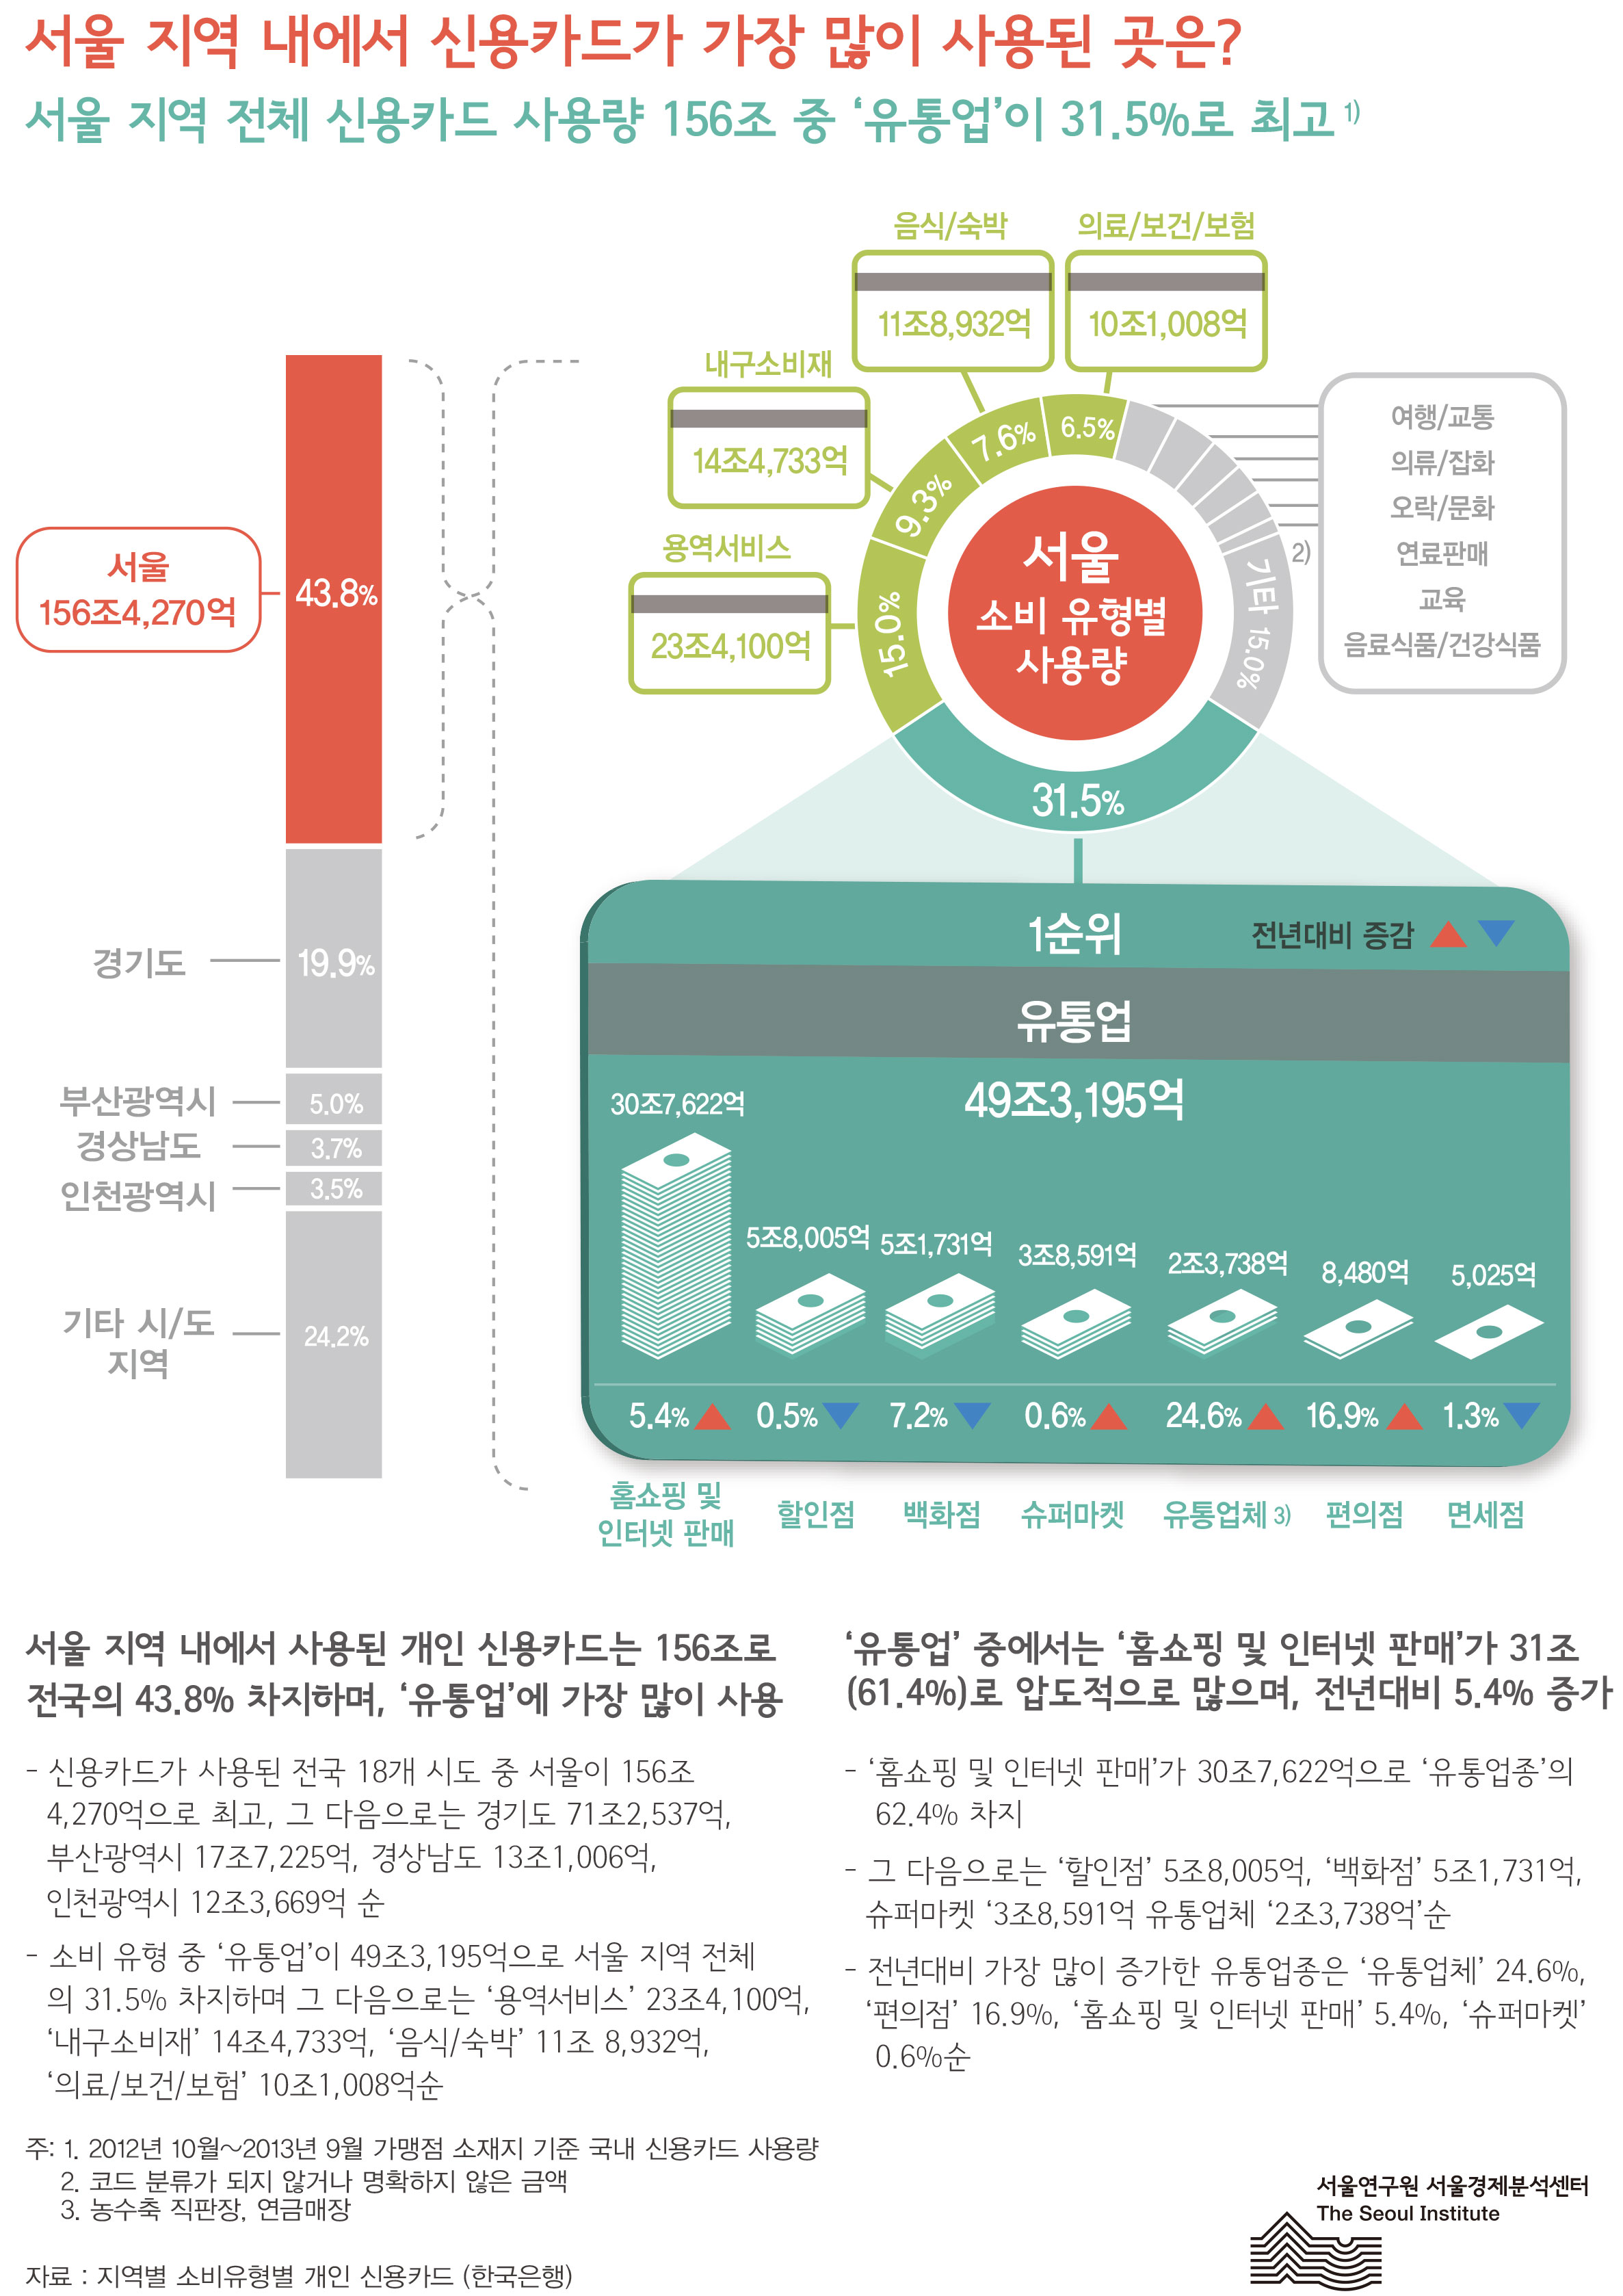 서울 지역 내에서 신용카드가 가장 많이 사용된 곳은? 서울인포그래픽스 제66호 2013년 12월 30일 서울 전체 신용카드 사용량 156조 중 ‘유통업’이 31.5%로 최고로 정리될 수 있습니다. 인포그래픽으로 제공되는 그래픽은 하단에 표로 자세히 제공됩니다.